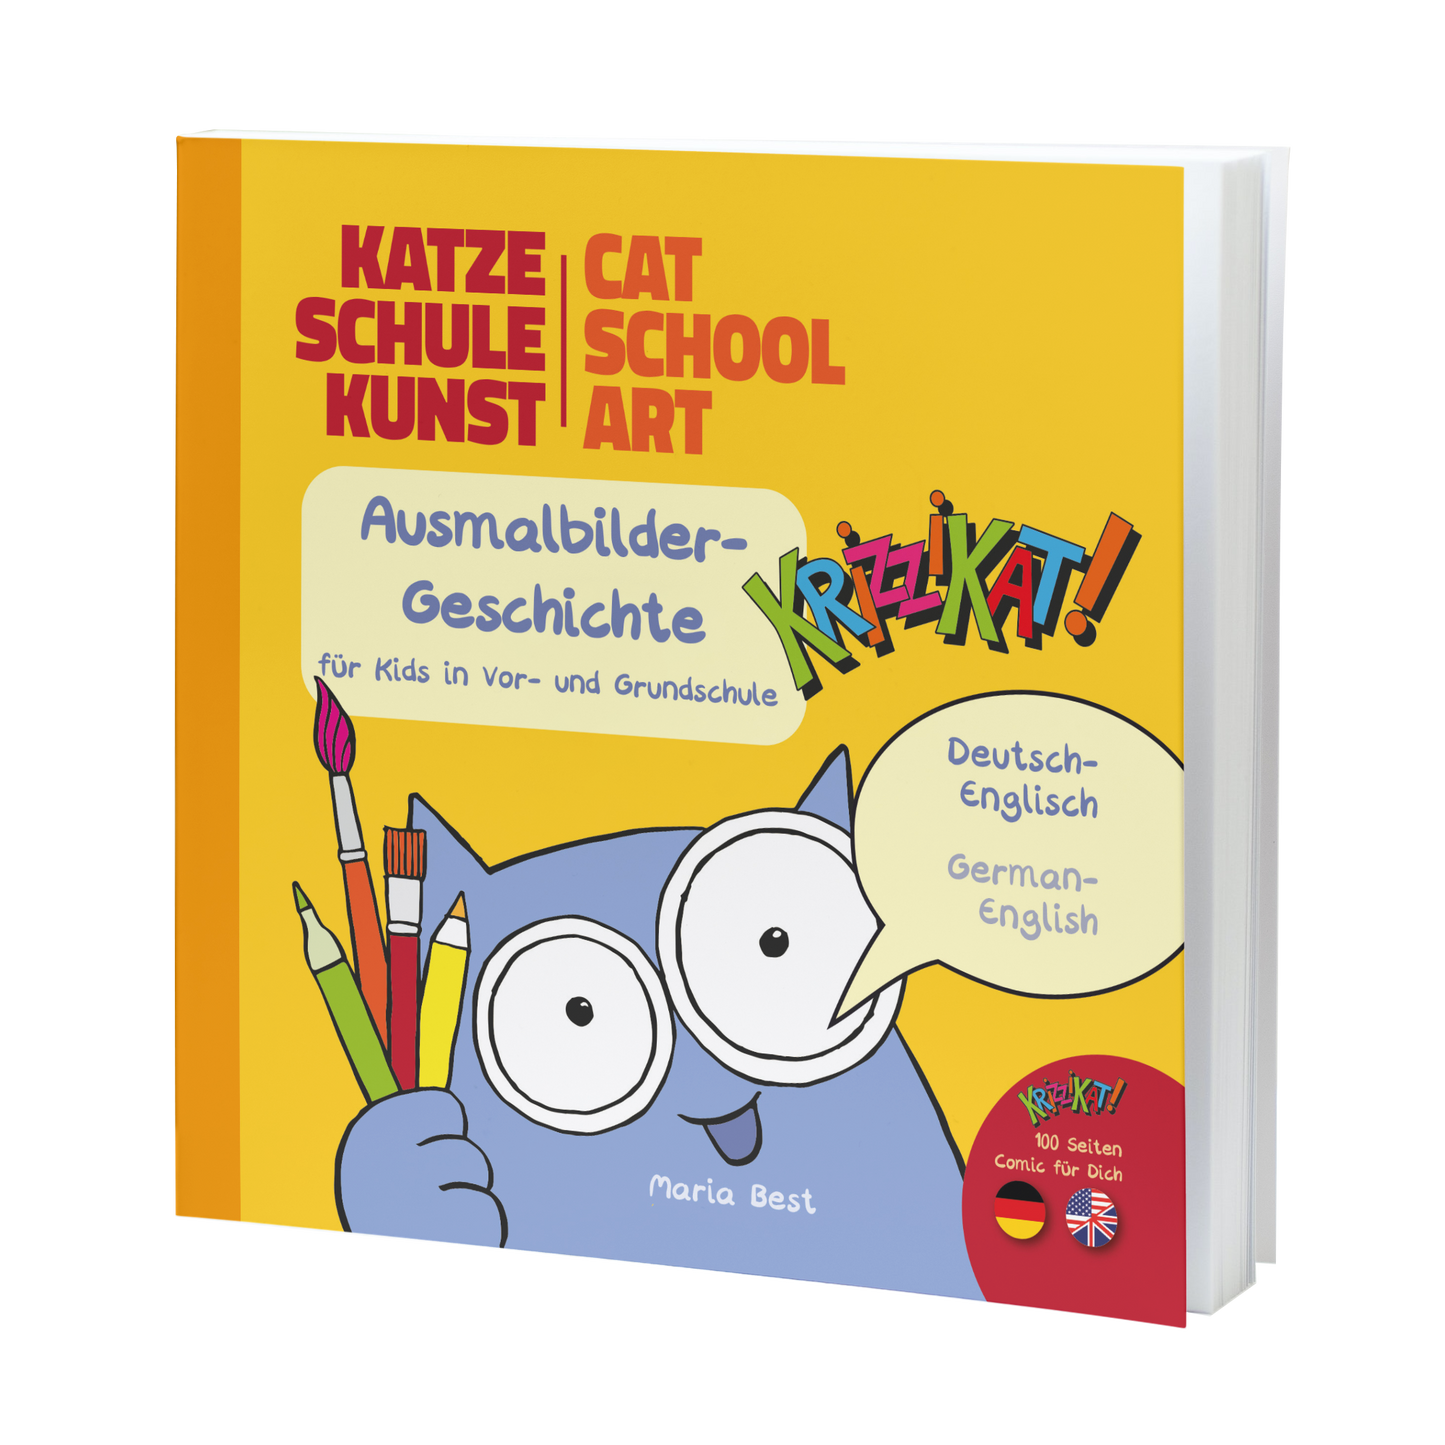 Krizzikat! Katze Schule Kunst - Cat School Art - Comic in deutsch-englisch